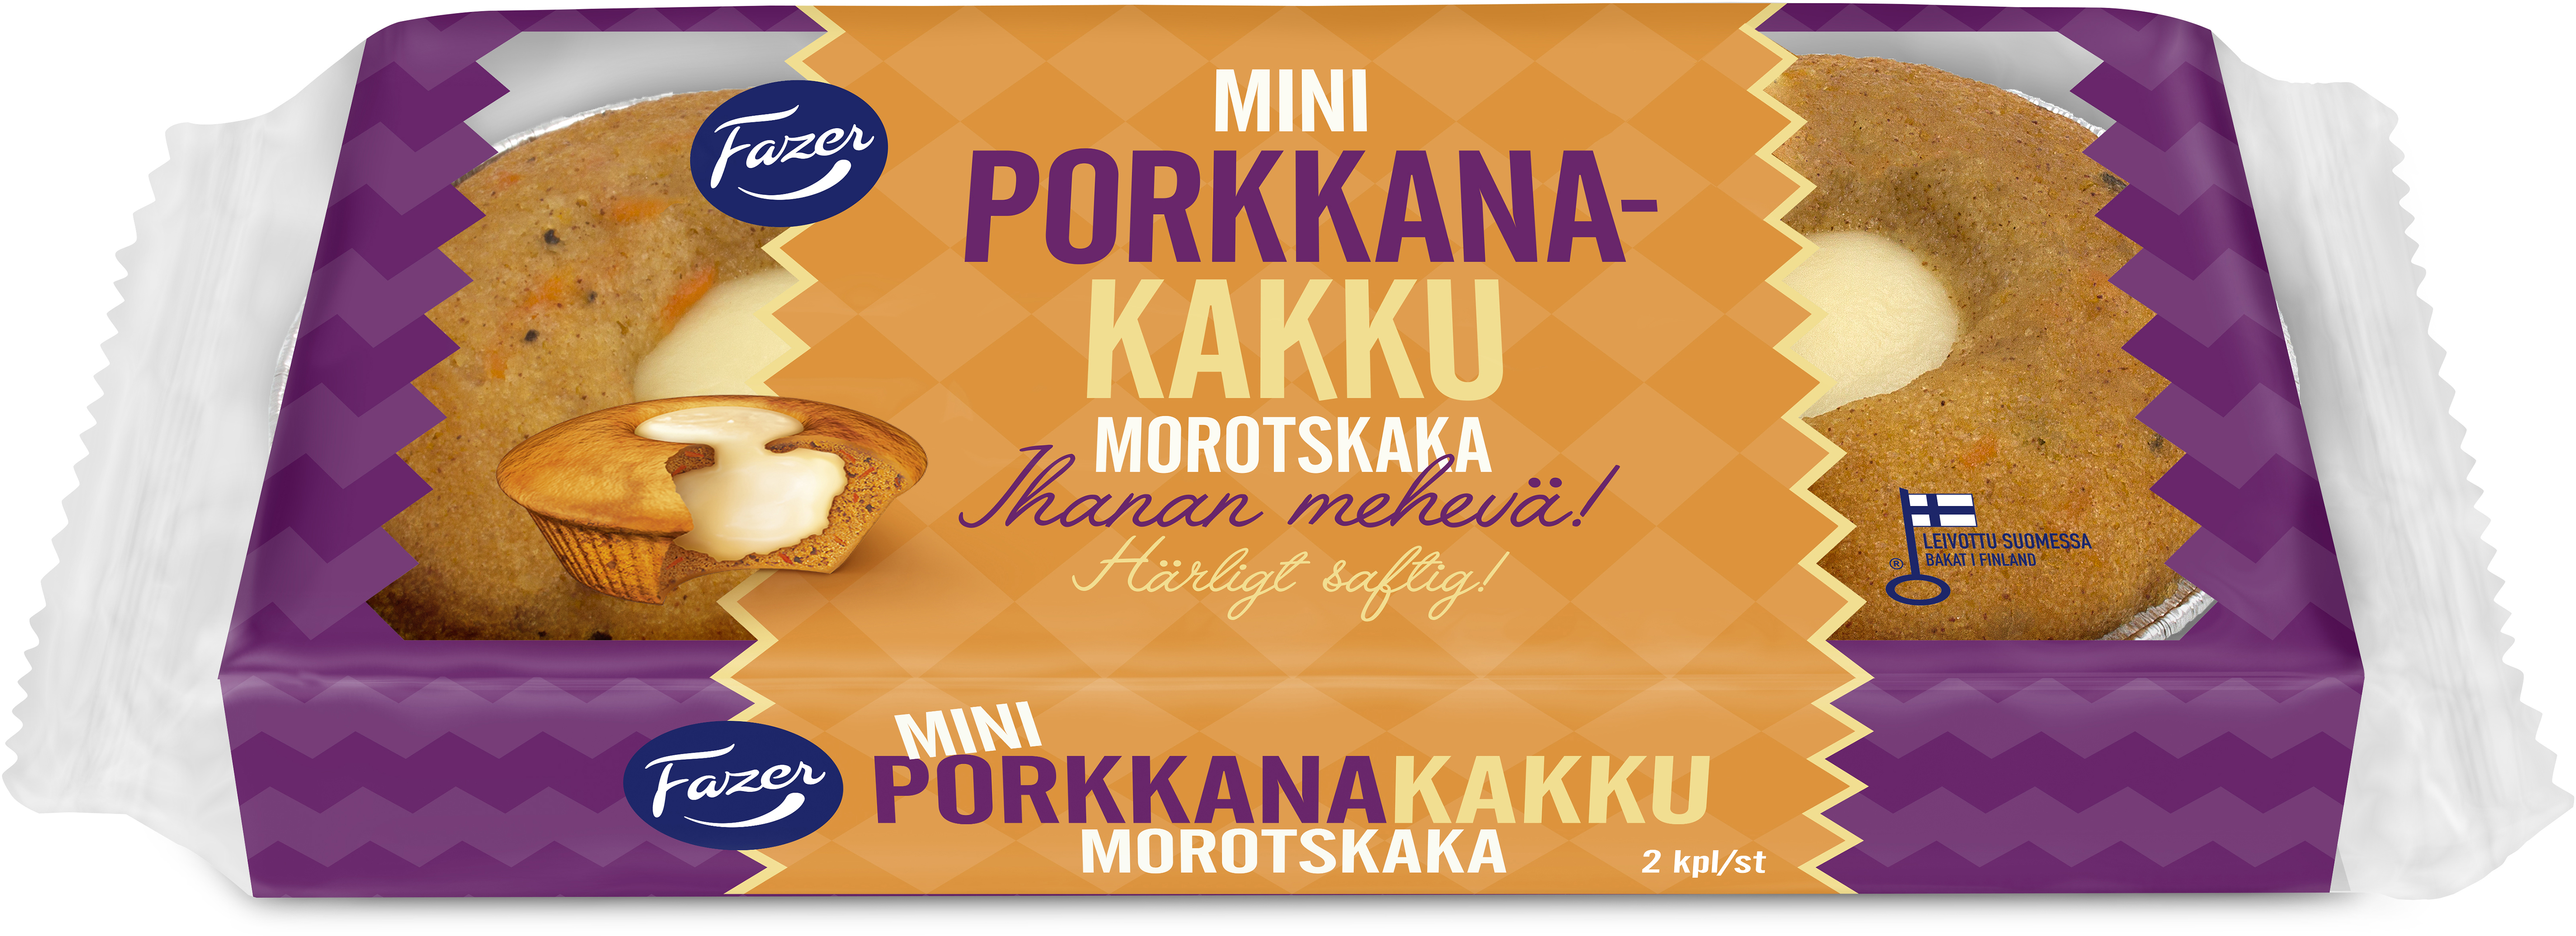 Fazer Mini Porkkanakakku 2kpl /85g kakku | K-Ruoka Verkkokauppa